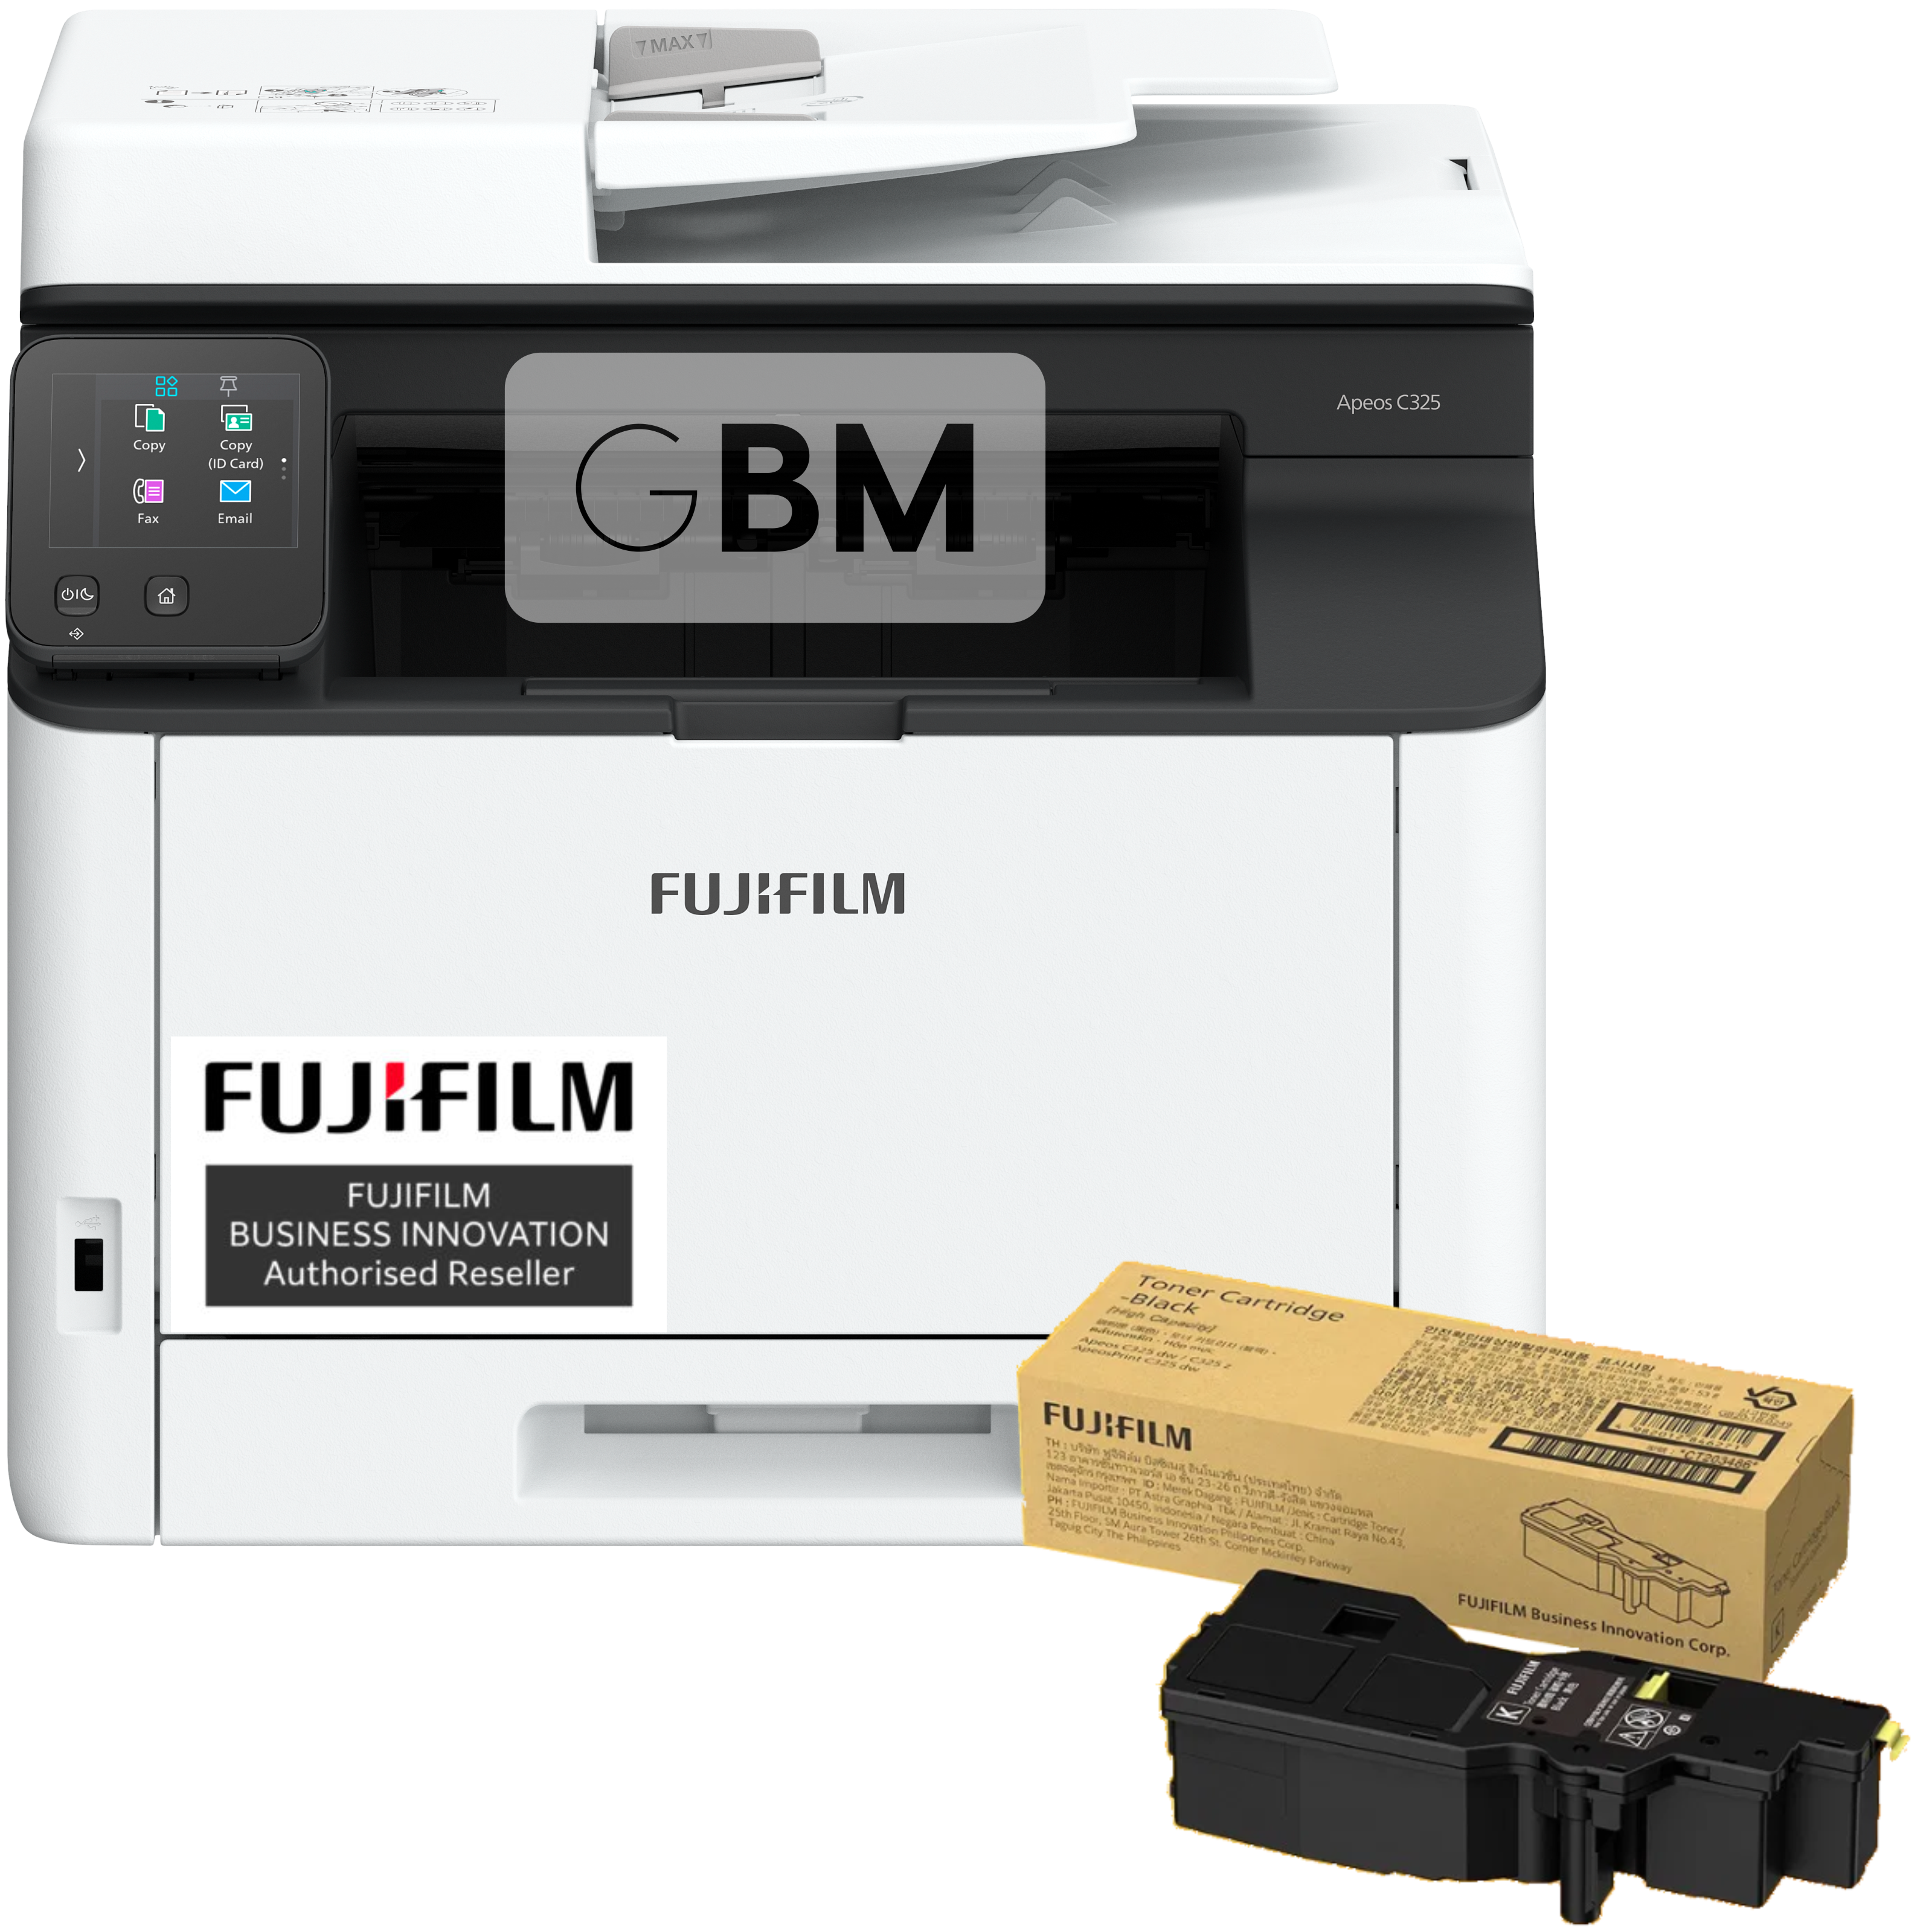 FUJIFILM Apeos C325z A4 Colour Multifunction Printer + Extra Set of Toners & 3Y Warranty